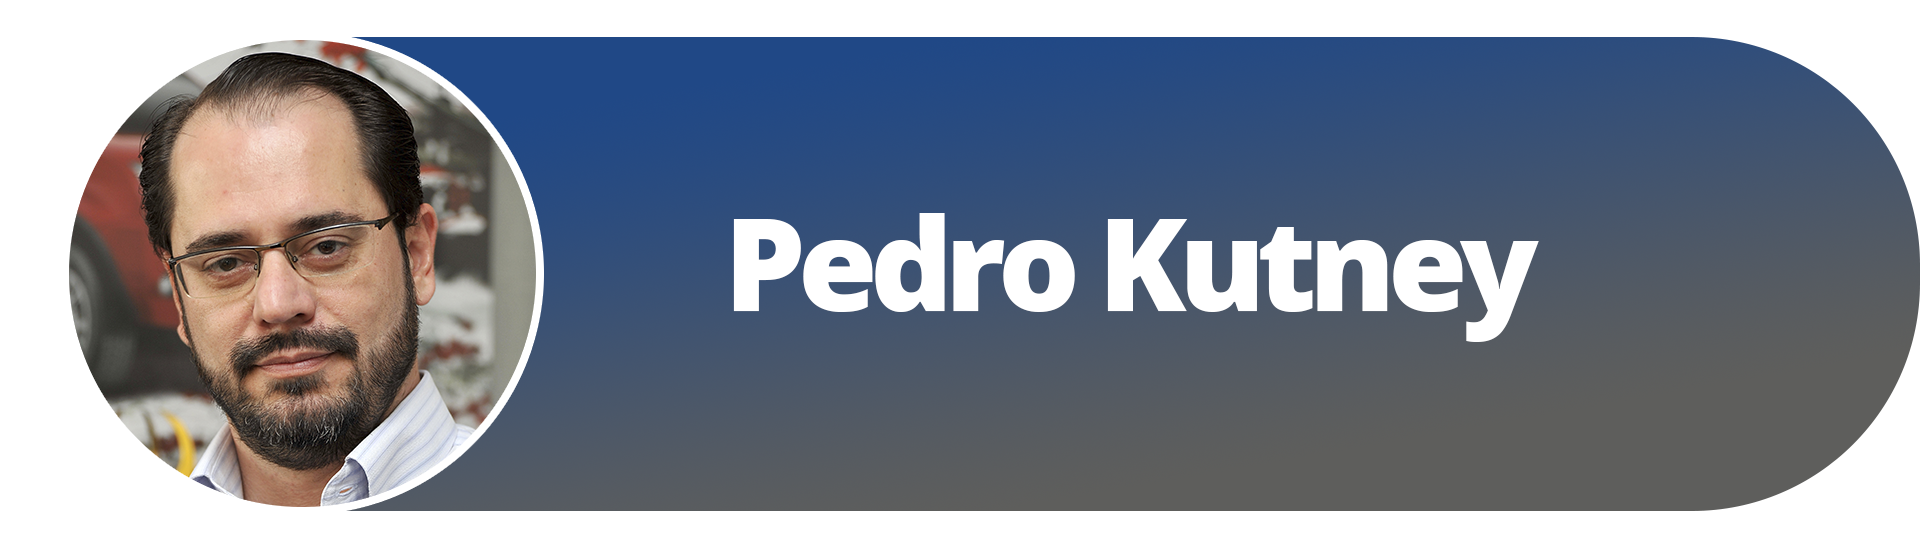 Coluna Pedro Kutney